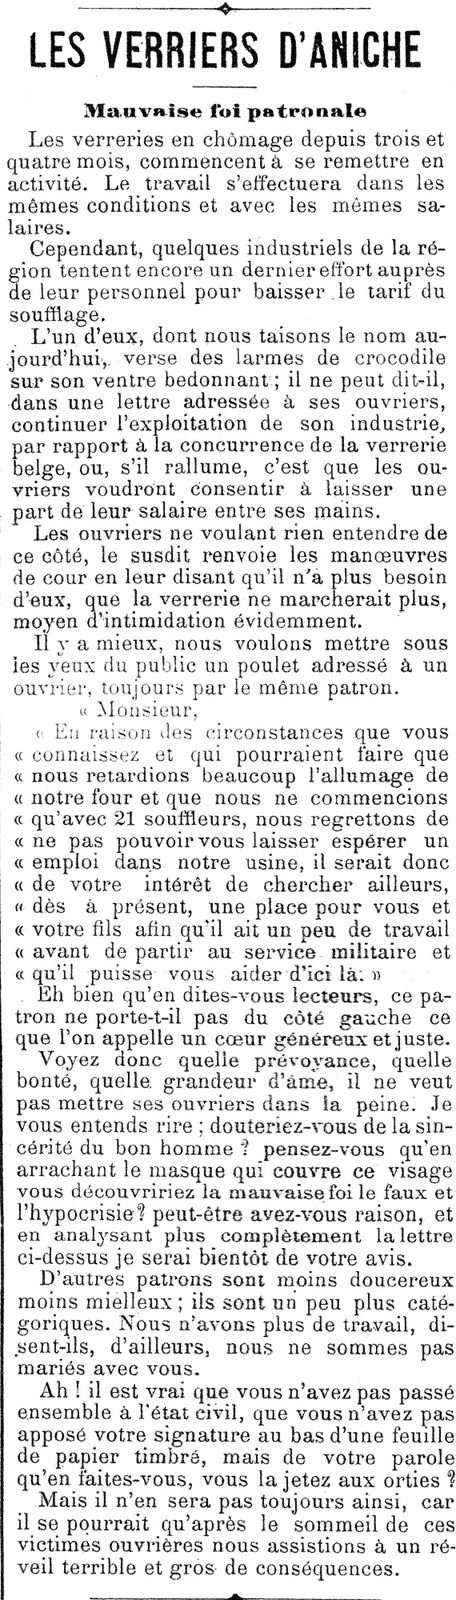 Article paru le 3 Juin 1894 dans le journal LE REVEIL des V